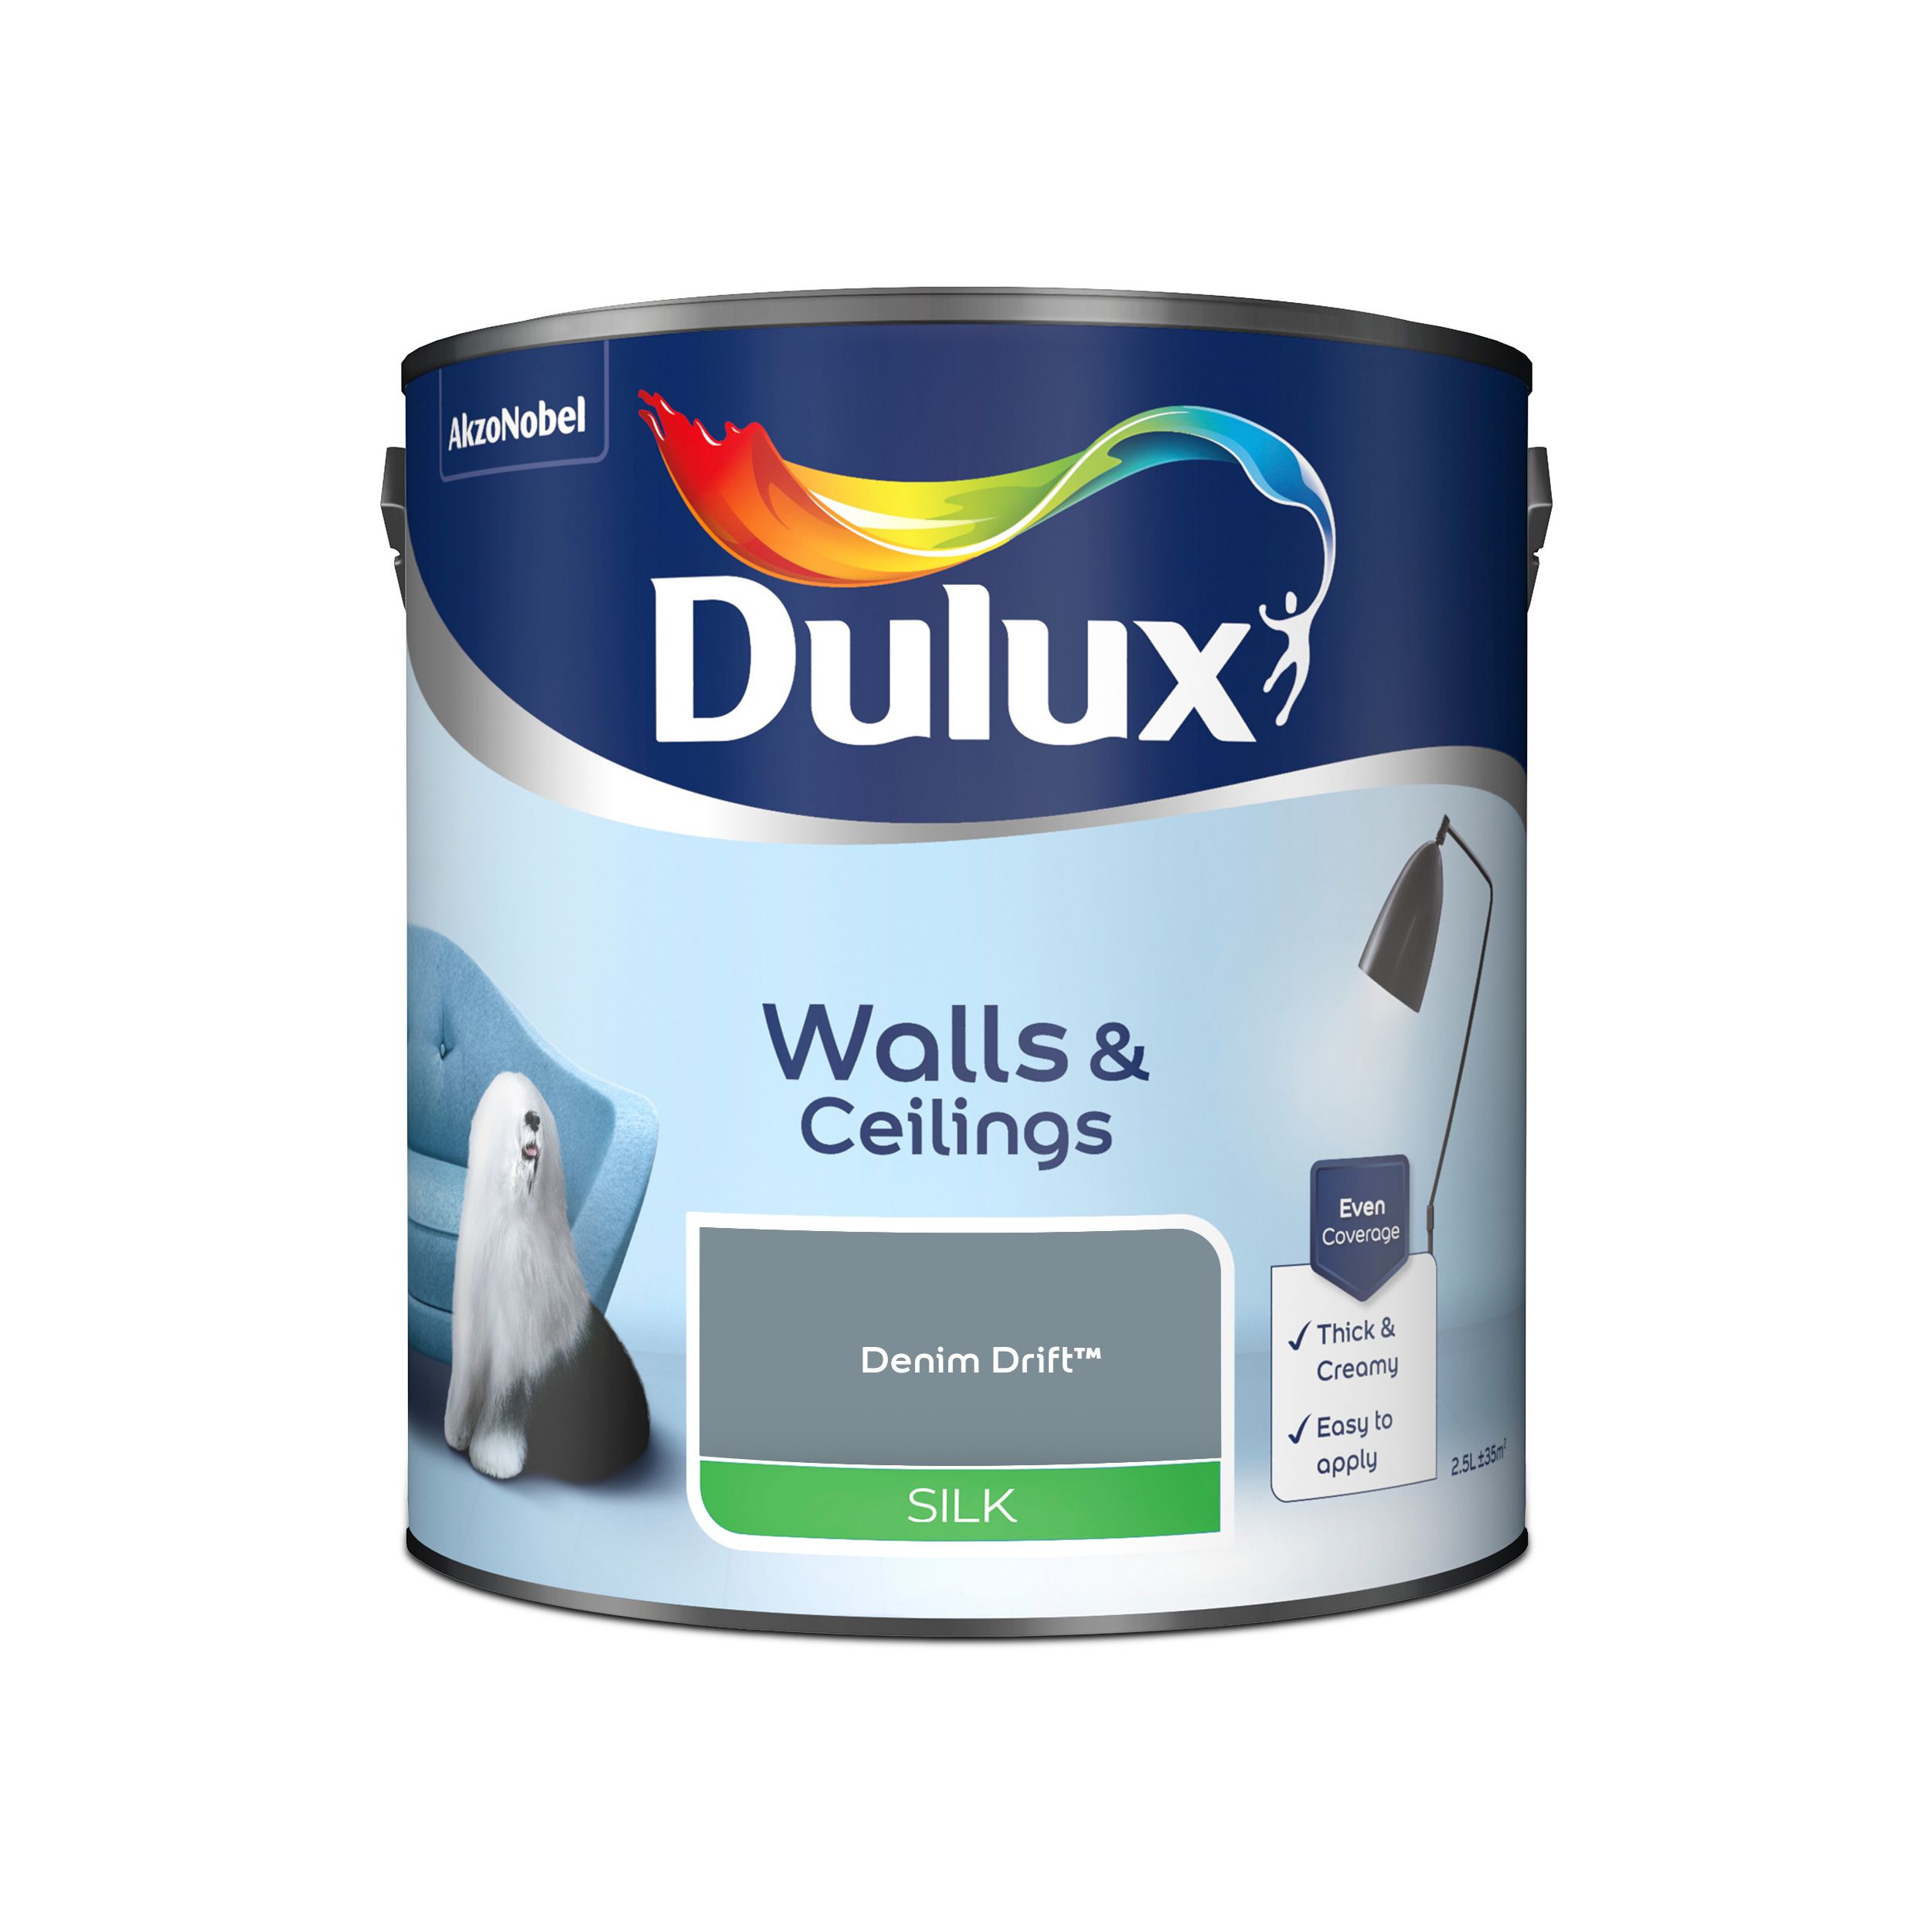 Dulux Walls & ceilings Denim drift Silk Emulsion paint, 2.5L